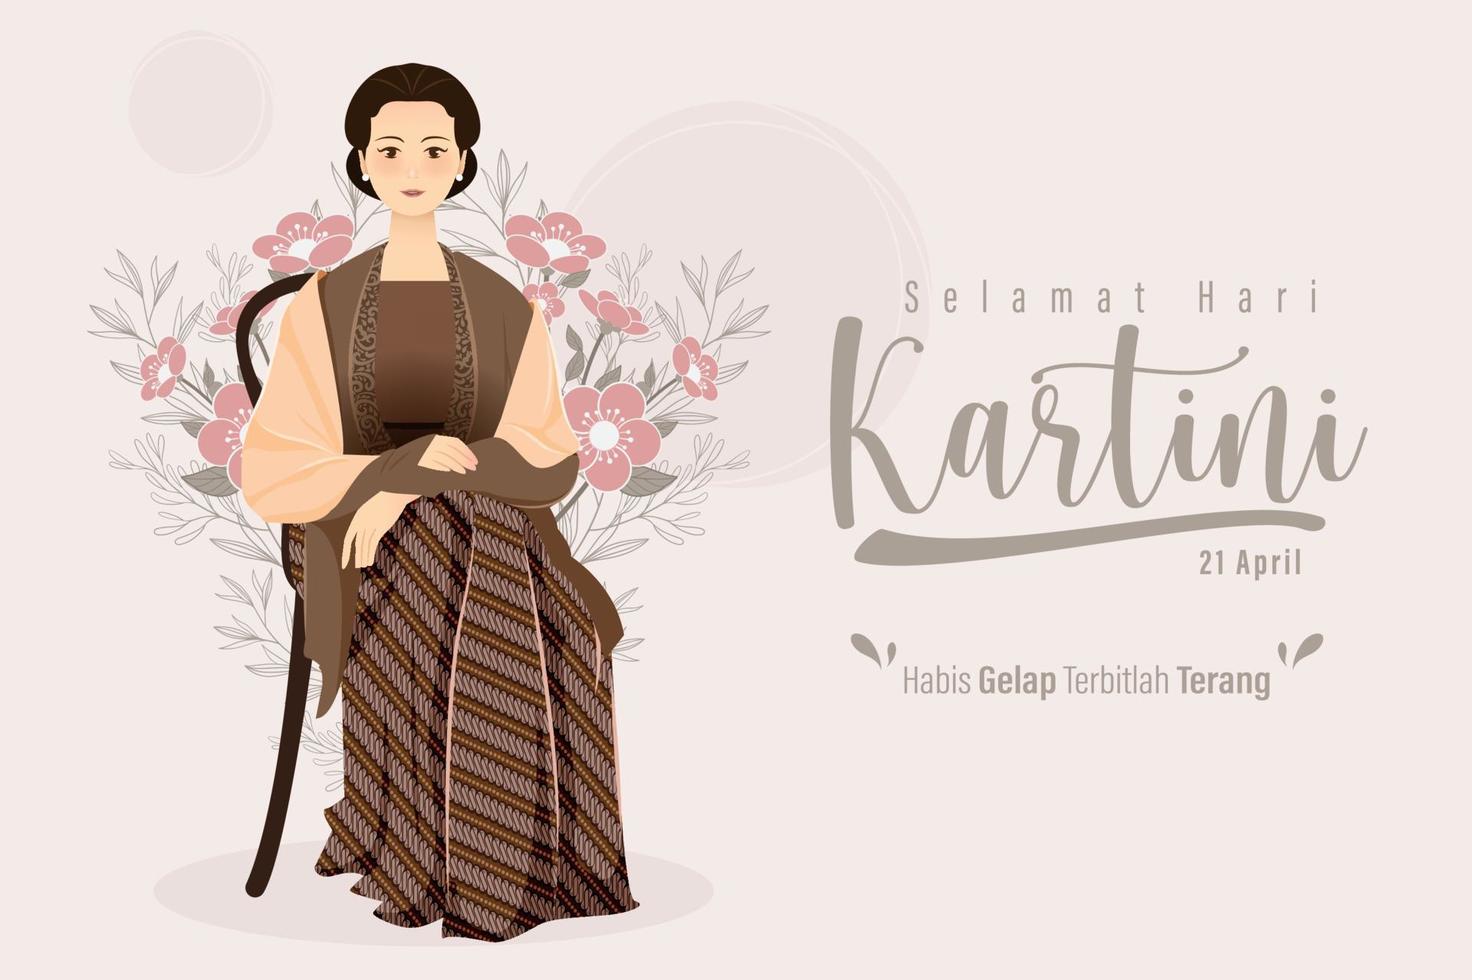 selamat hari kartini betekent gelukkige kartini-dag. kartini is een Indonesische vrouwelijke held. habis gelap terbitlah terang betekent na duisternis komt licht. vectorillustratie. vector